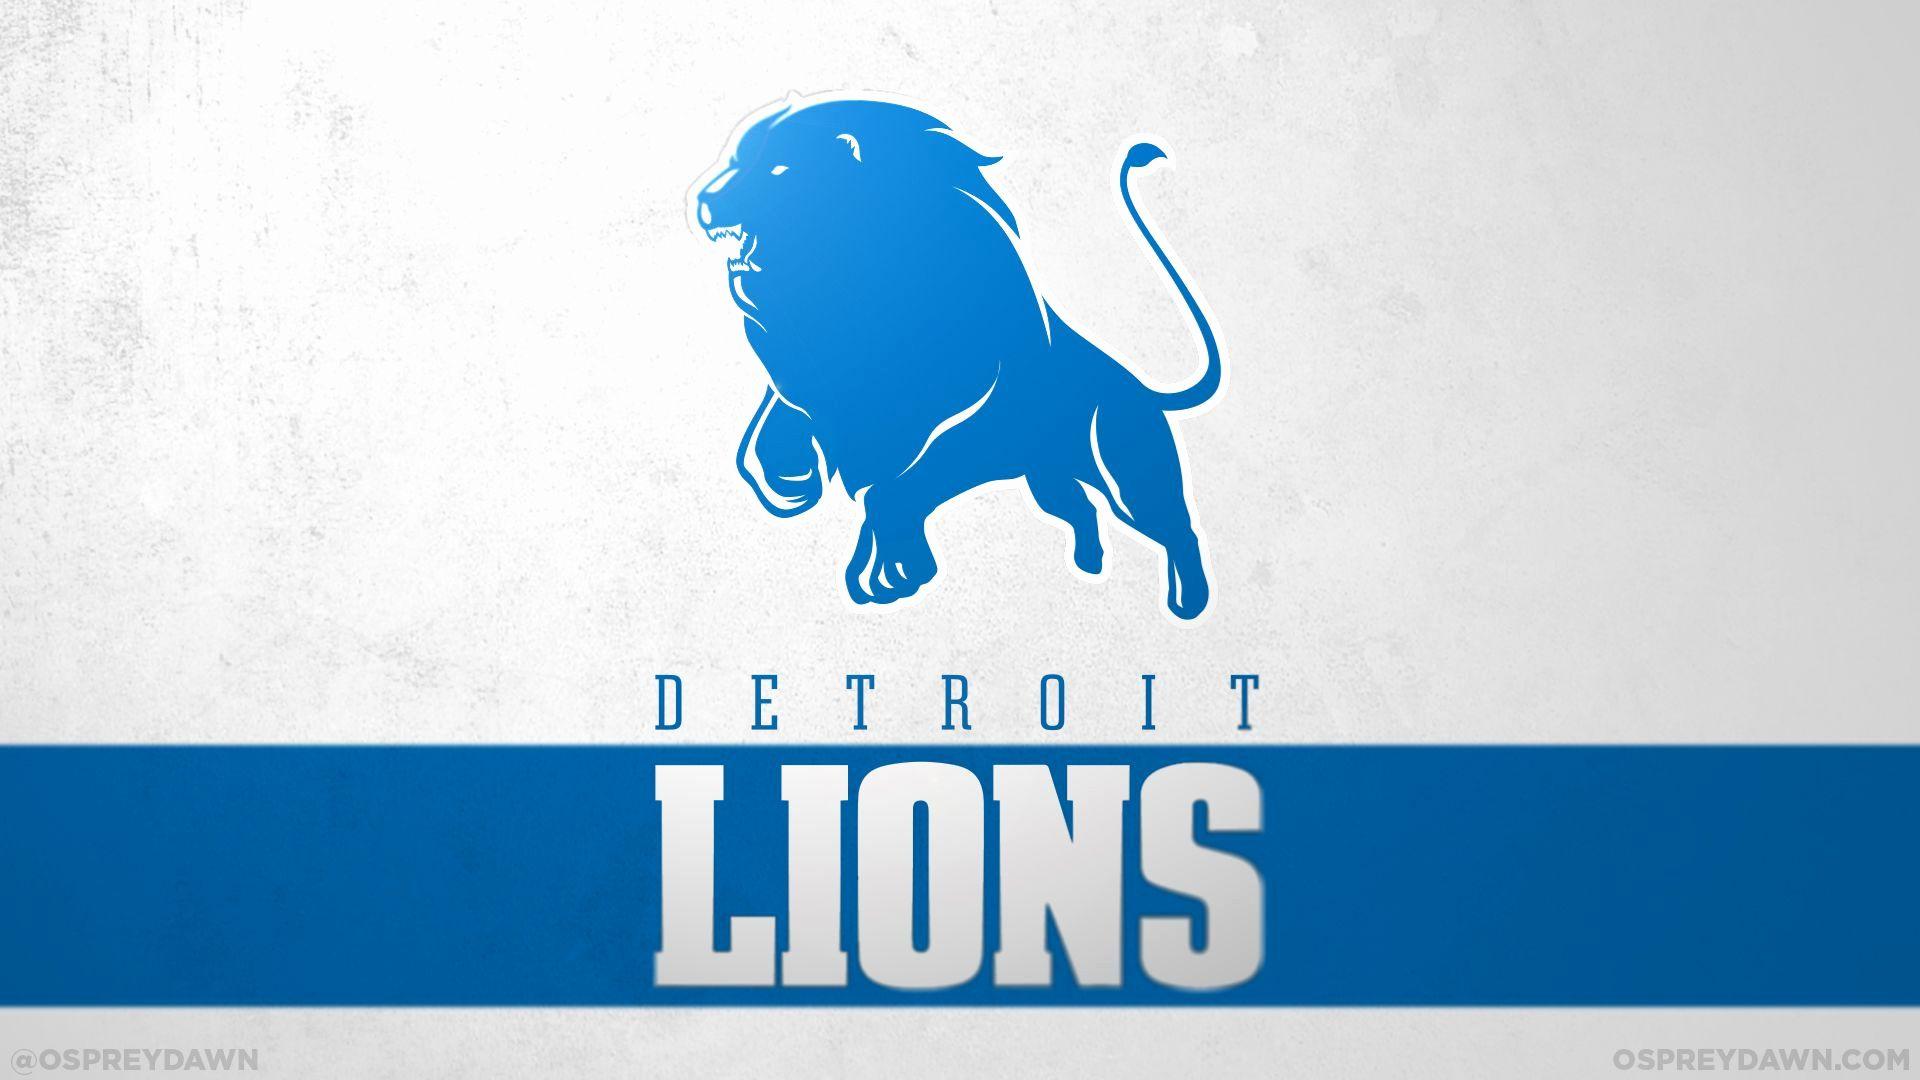 Detroit Lions Wallpaper Inspirational the Detroit Lions M